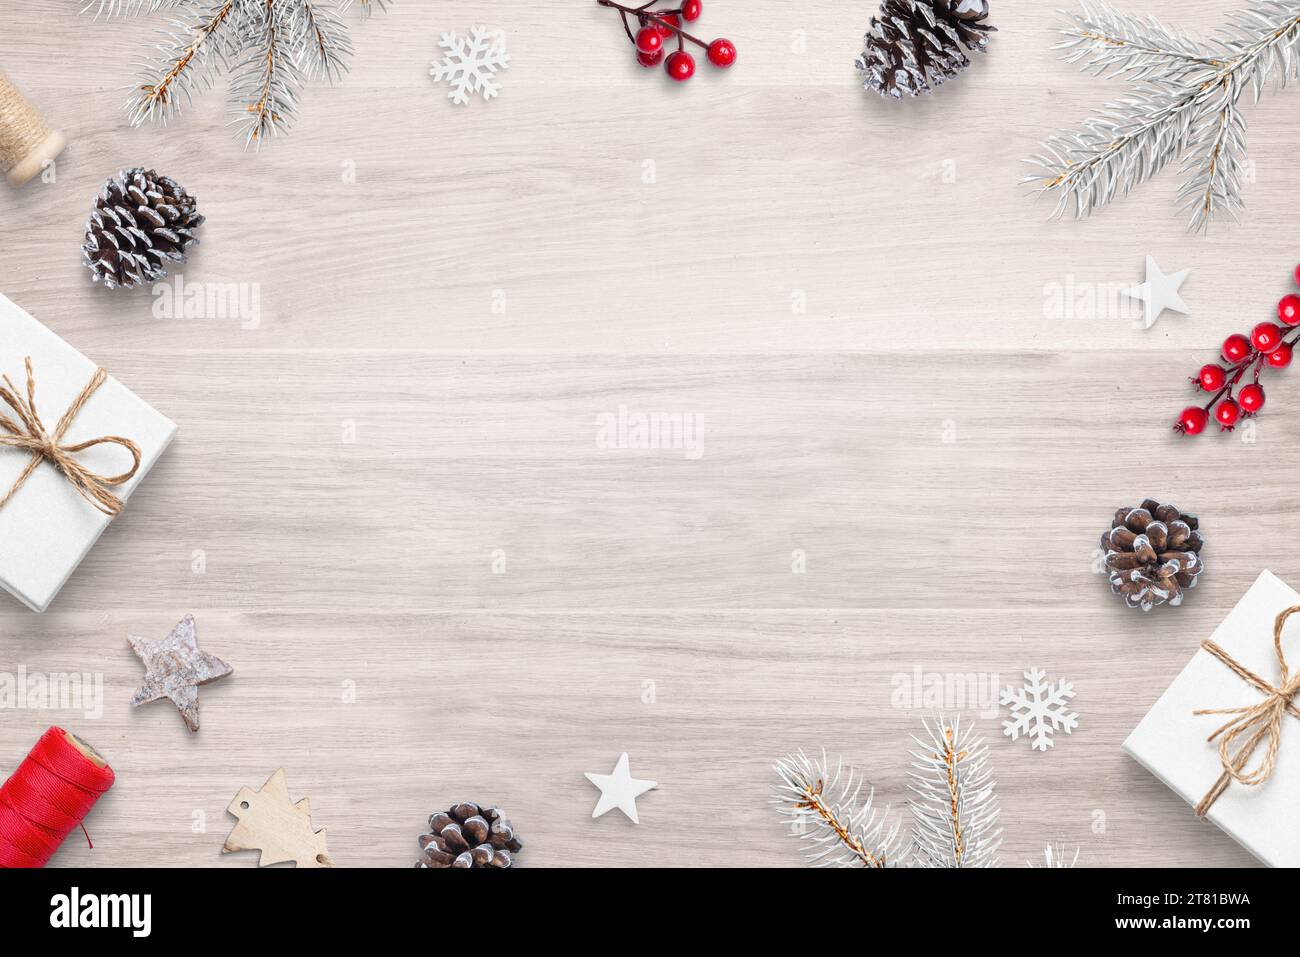 Vue de dessus plat Lay composition de Noël sur la table en bois avec des décorations de fête, avec espace de copie au centre Banque D'Images